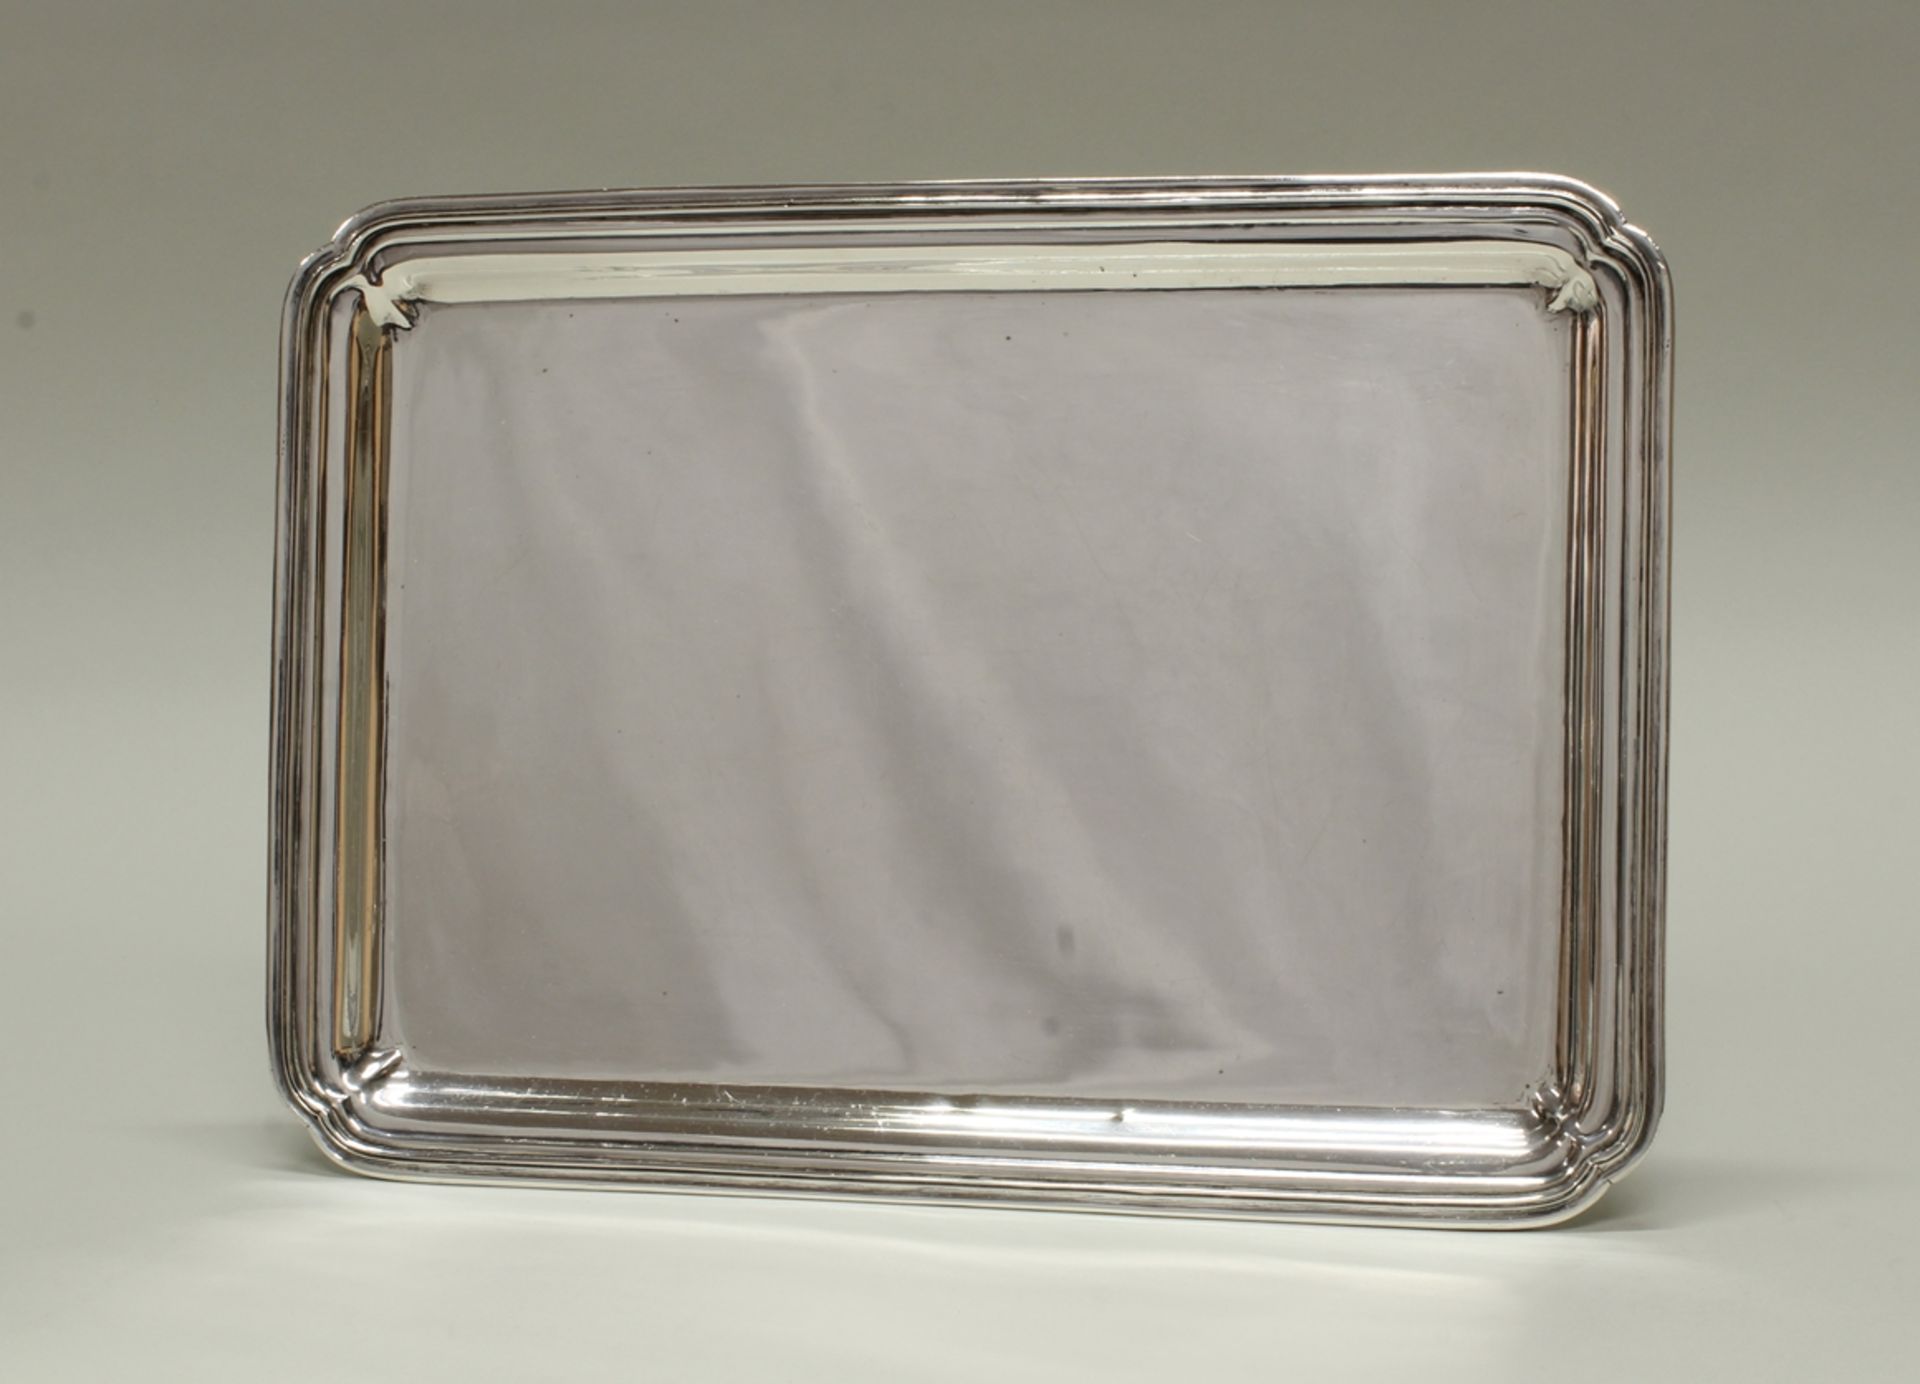 Tablett, Silber, Ägypten, rechteckig, profilierter Rand mit passigen Ecken, 31 x 22.2 cm, ca. 690 g